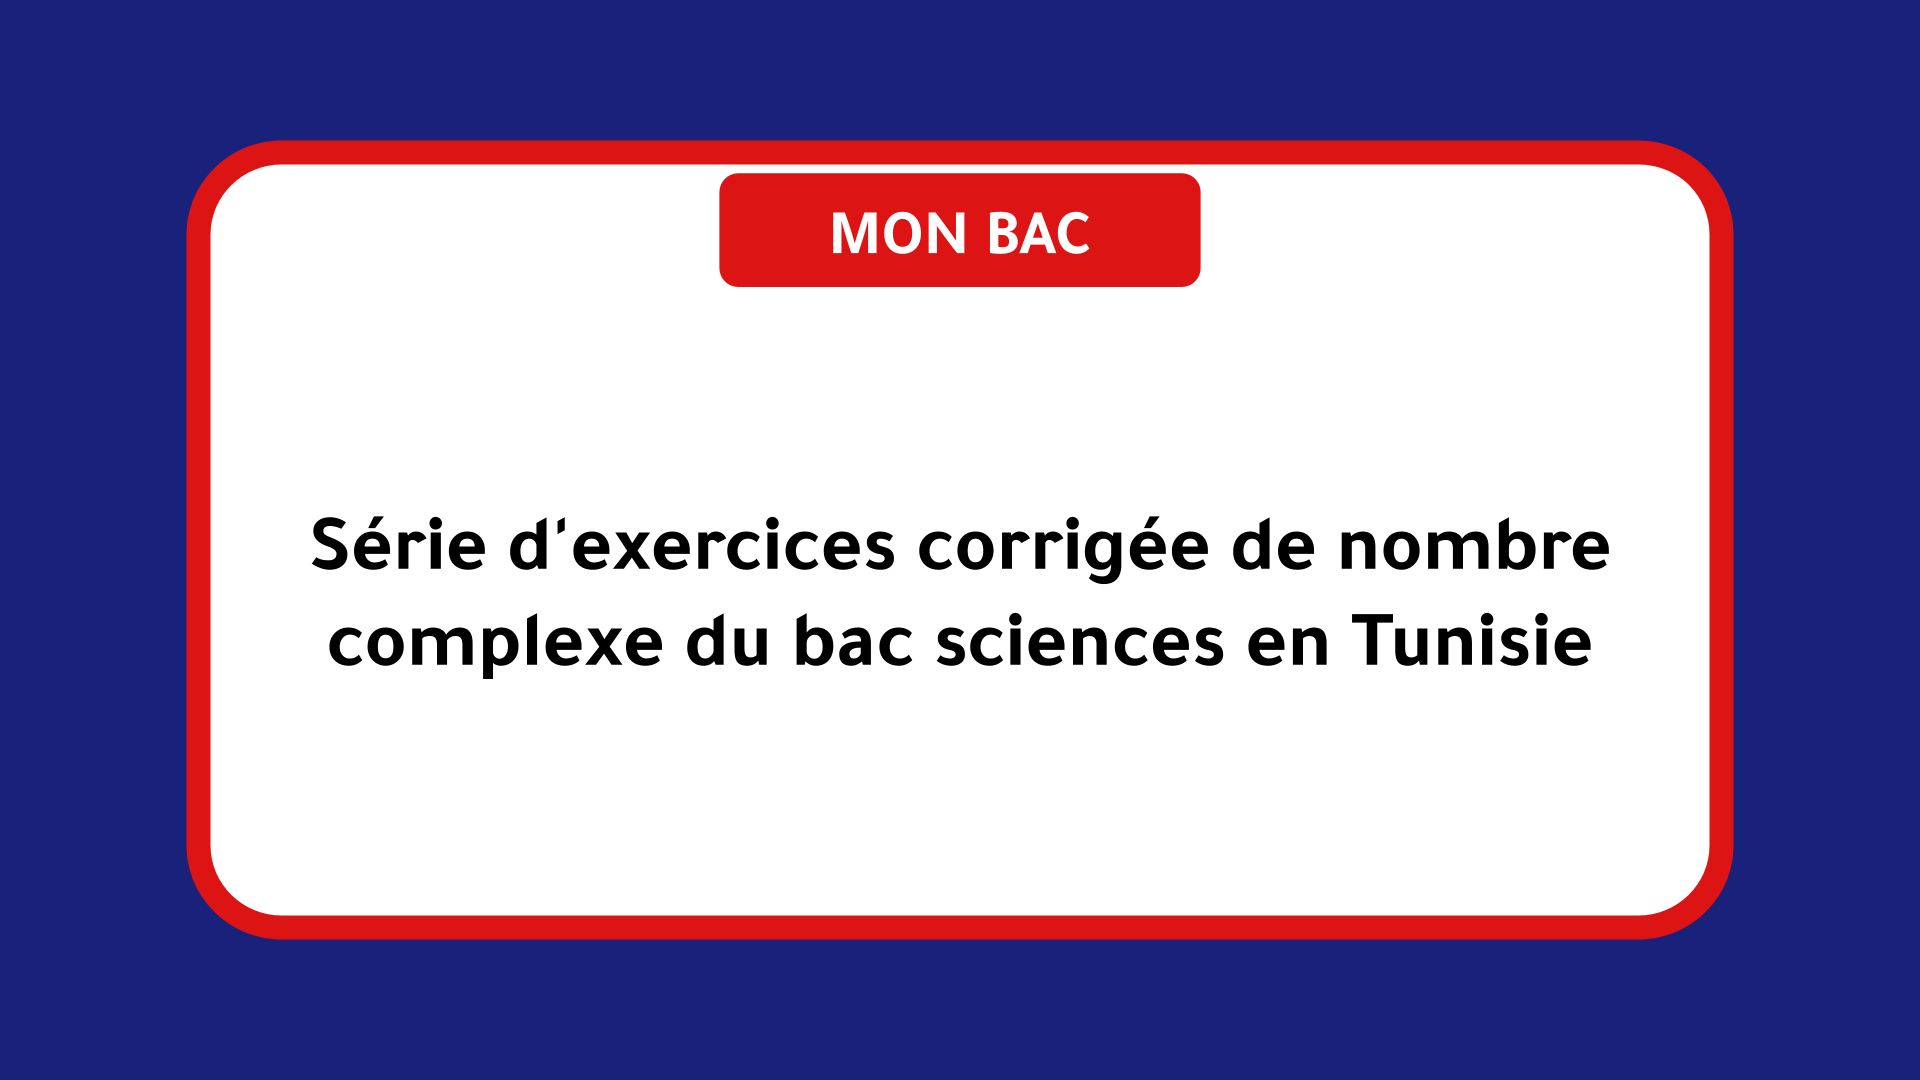 Série d'exercices corrigée de nombre complexe bac sciences Tunisie